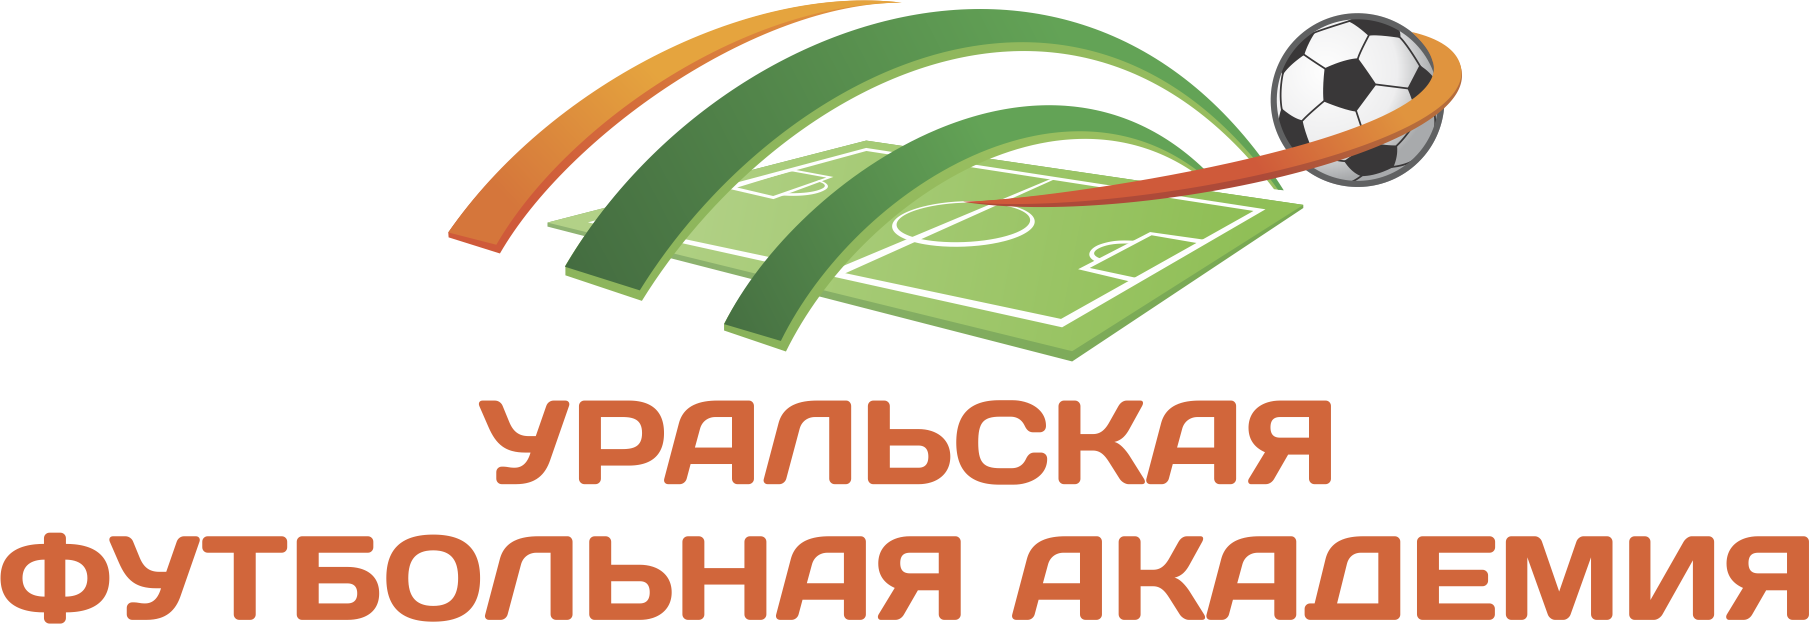 Государственное автономное учреждение Свердловской области Уральская футбольная академия logo